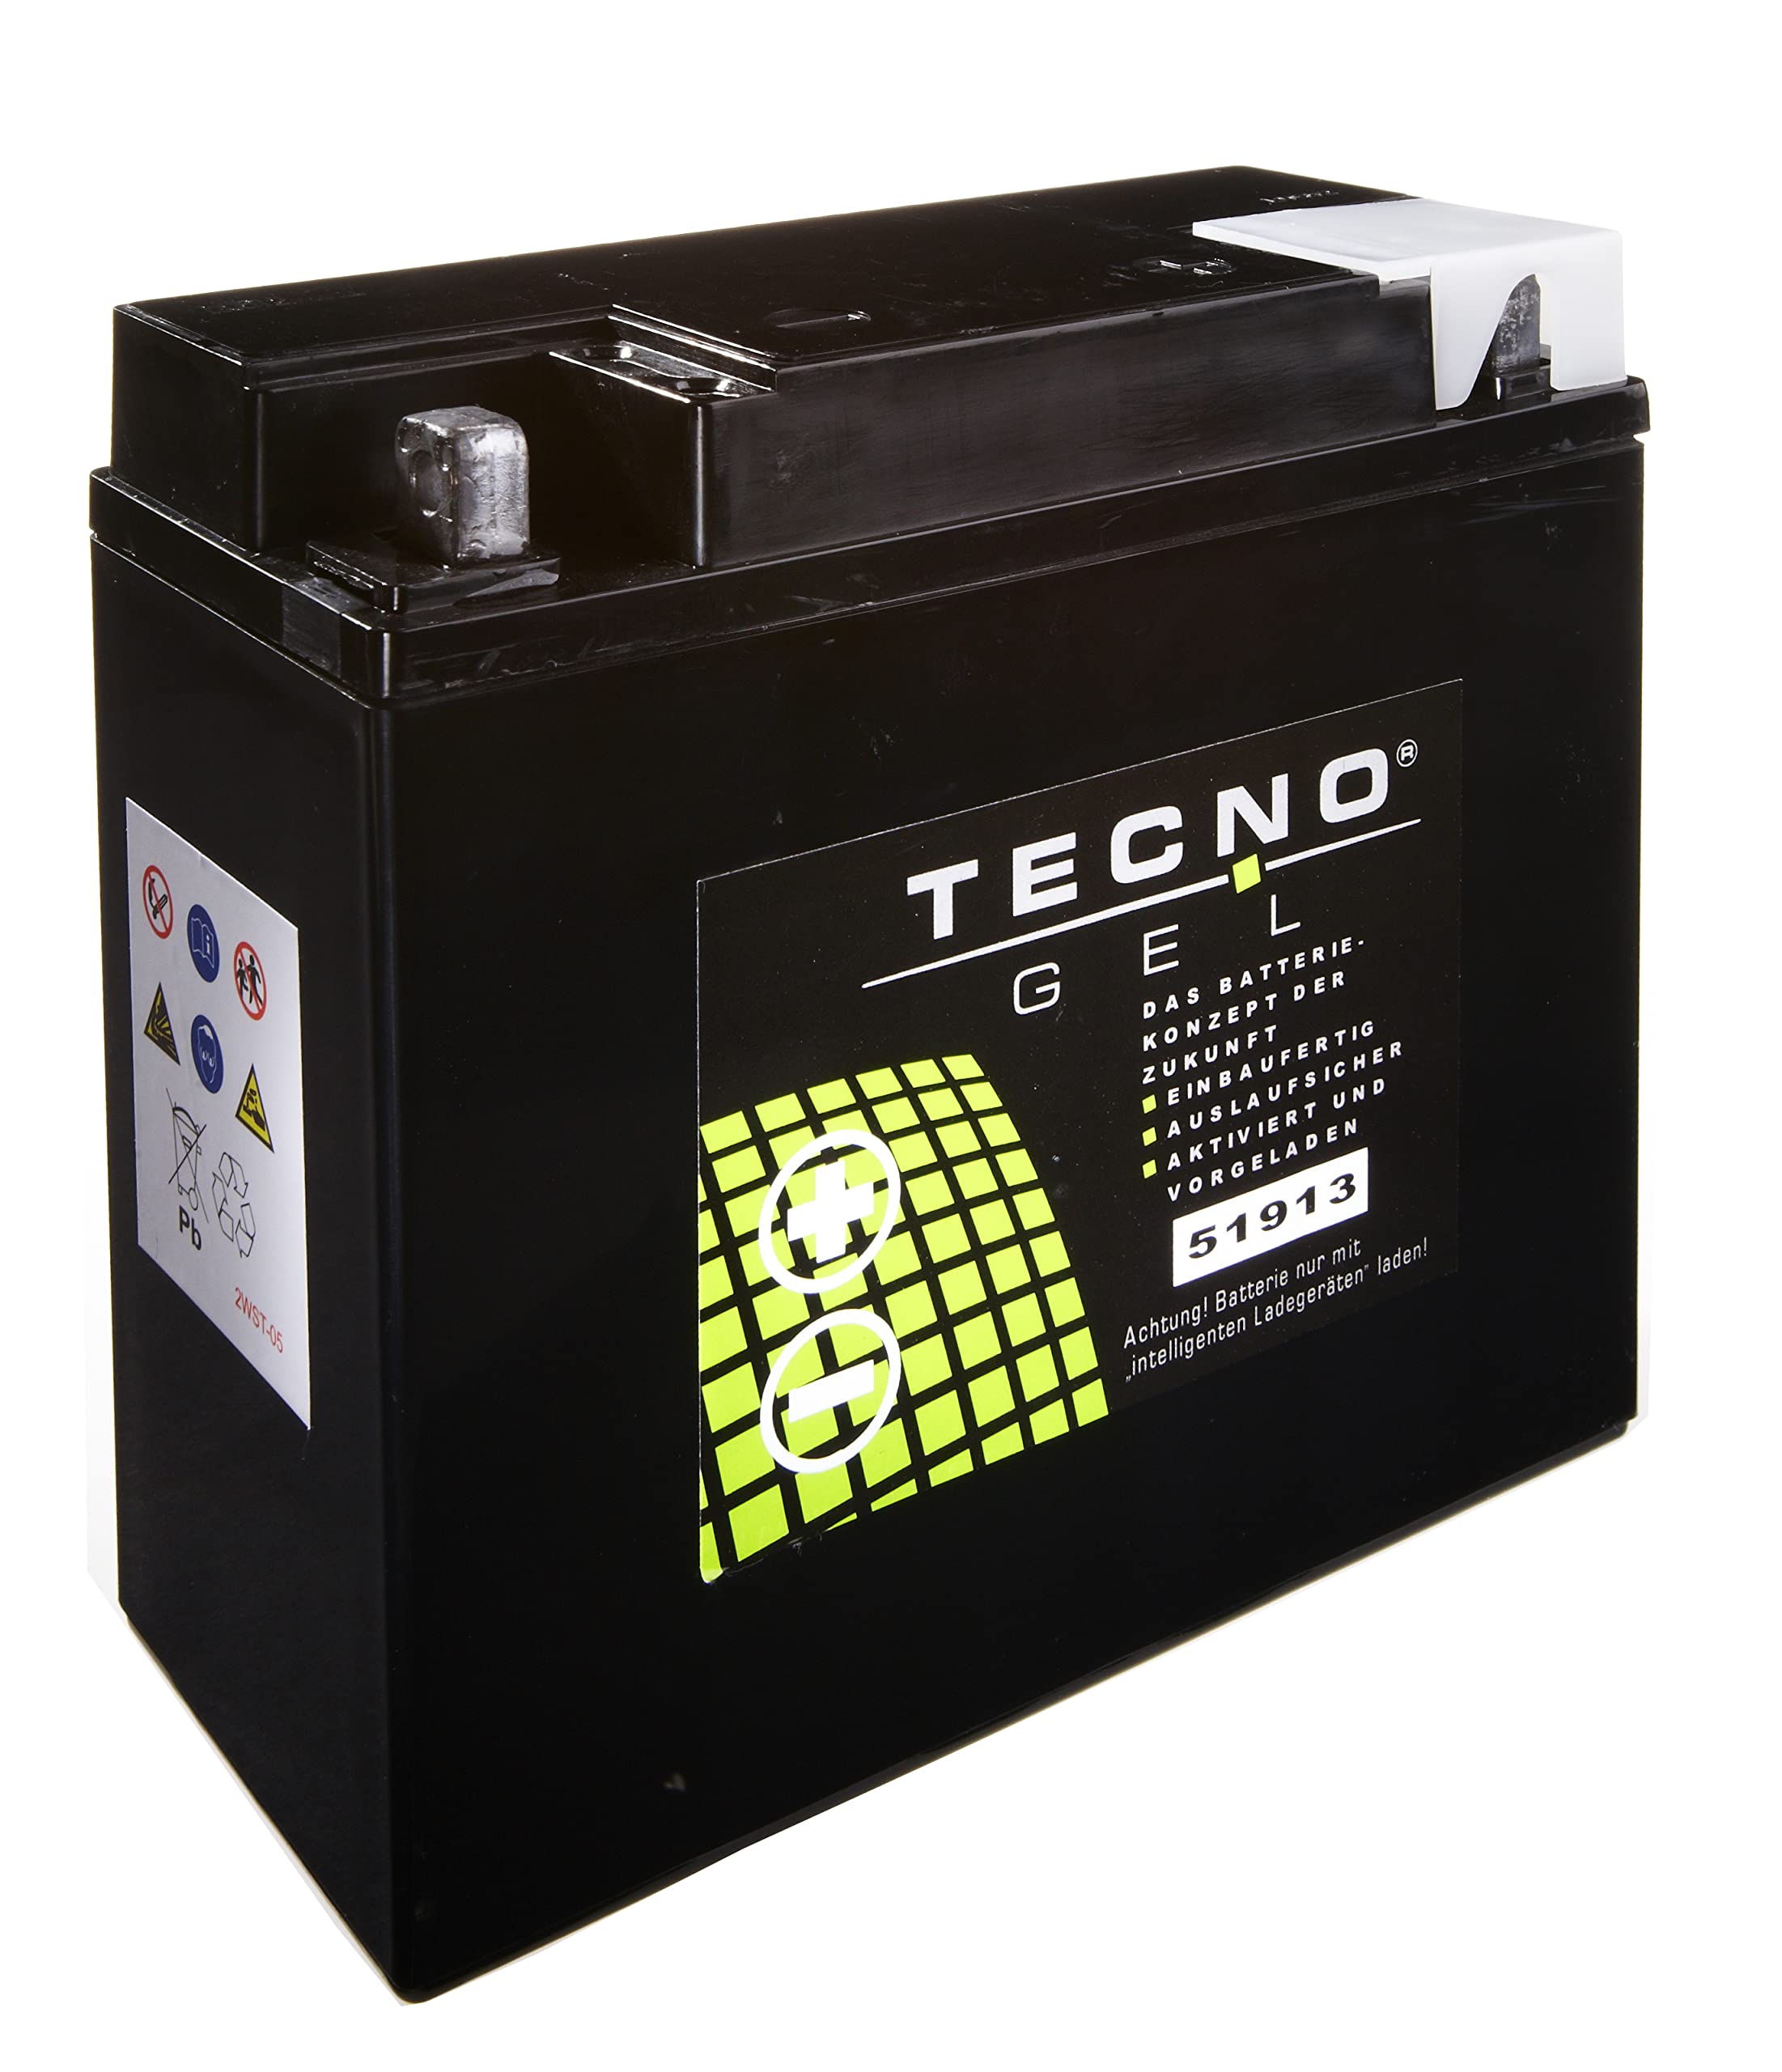 TECNO-GEL Motorrad-Batterie 51913 (51814) für MOTO GUZZI Le Mans 850 I, II, III, 1000 1975-1993, 12V Gel-Batterie 22 Ah, 186x82x171 mm